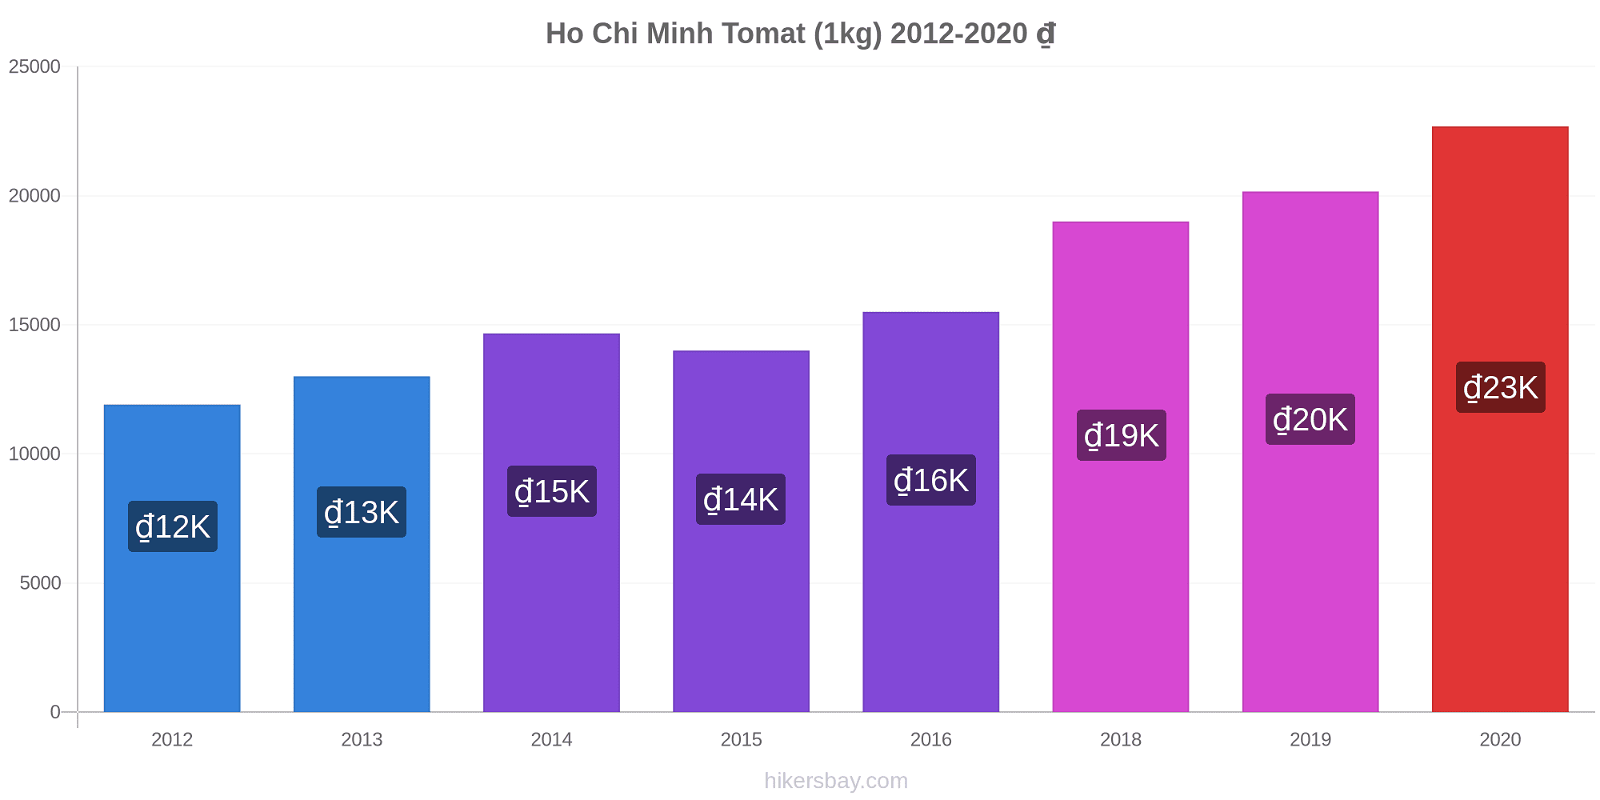 Ho Chi Minh perubahan harga Tomat (1kg) hikersbay.com